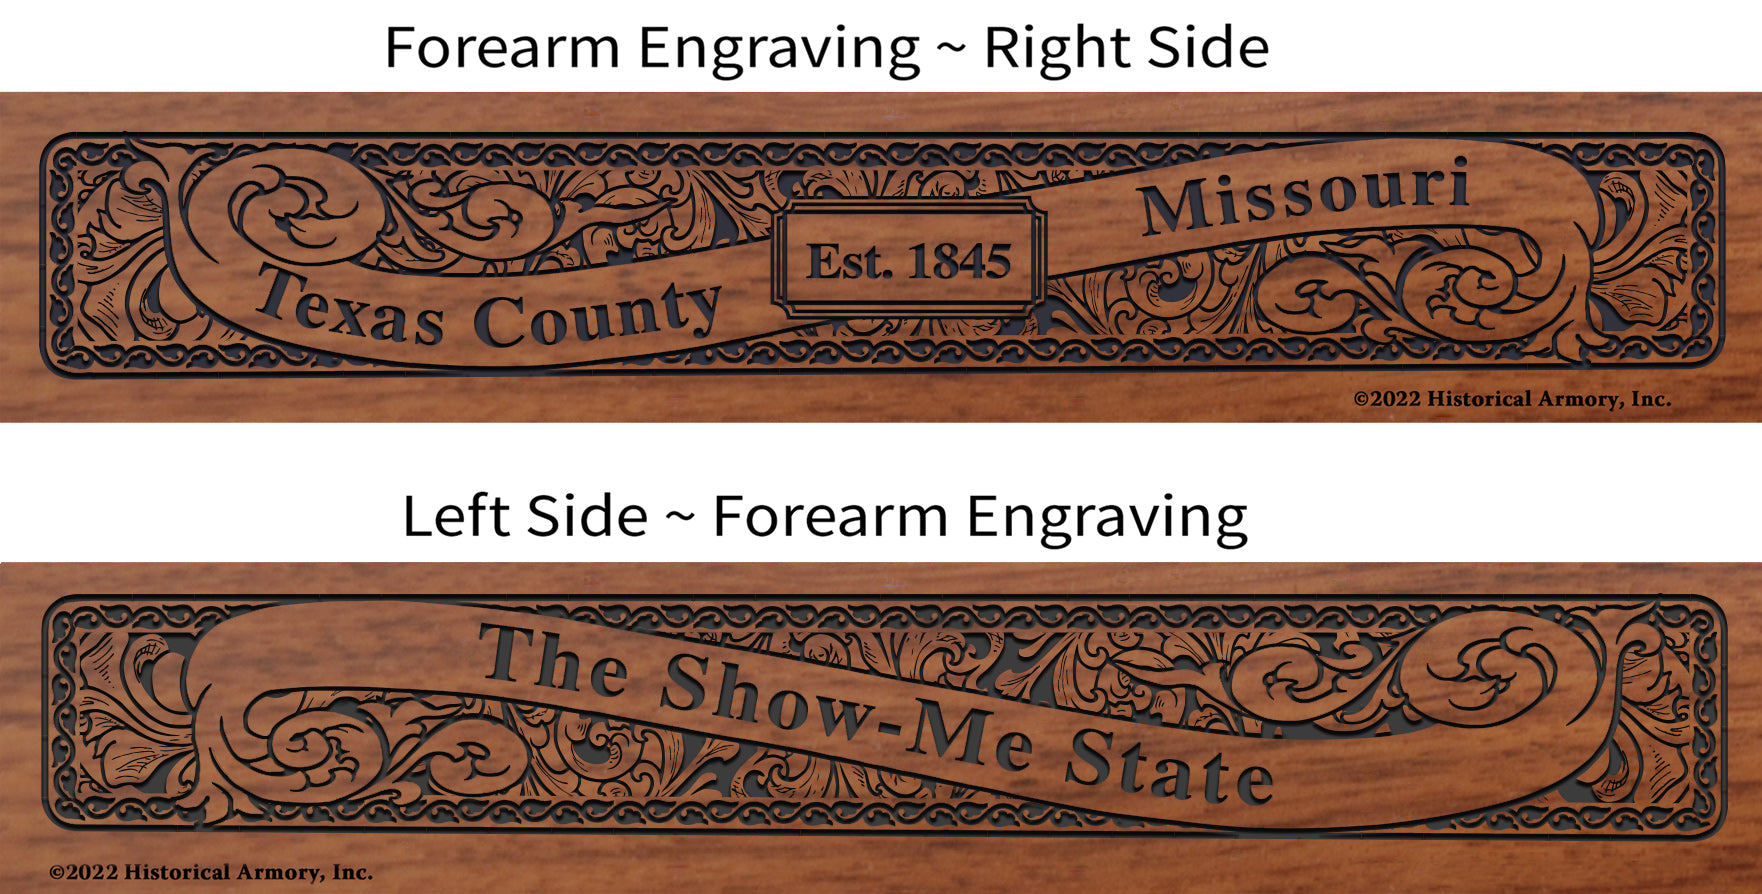 Texas County Missouri Engraved Rifle Forearm